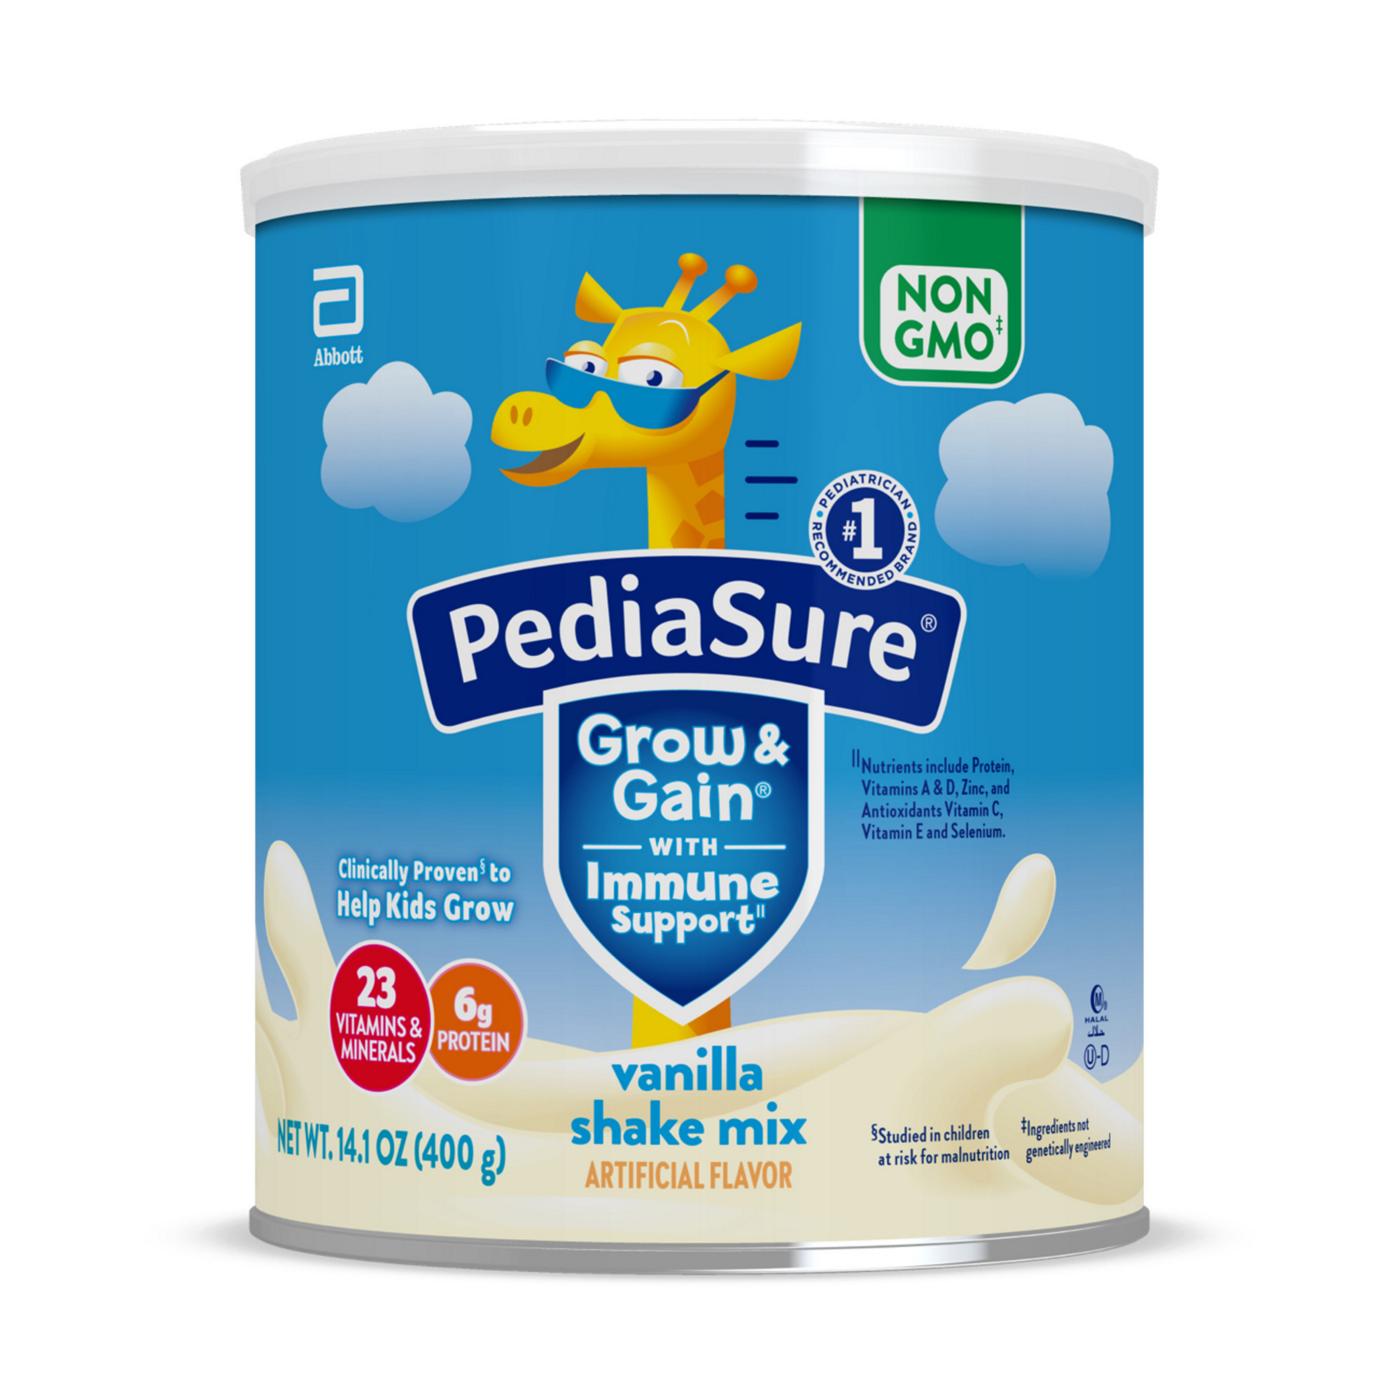 PediaSure Grow & Gain with Immune Support Shake Mix - Vanilla; image 1 of 11